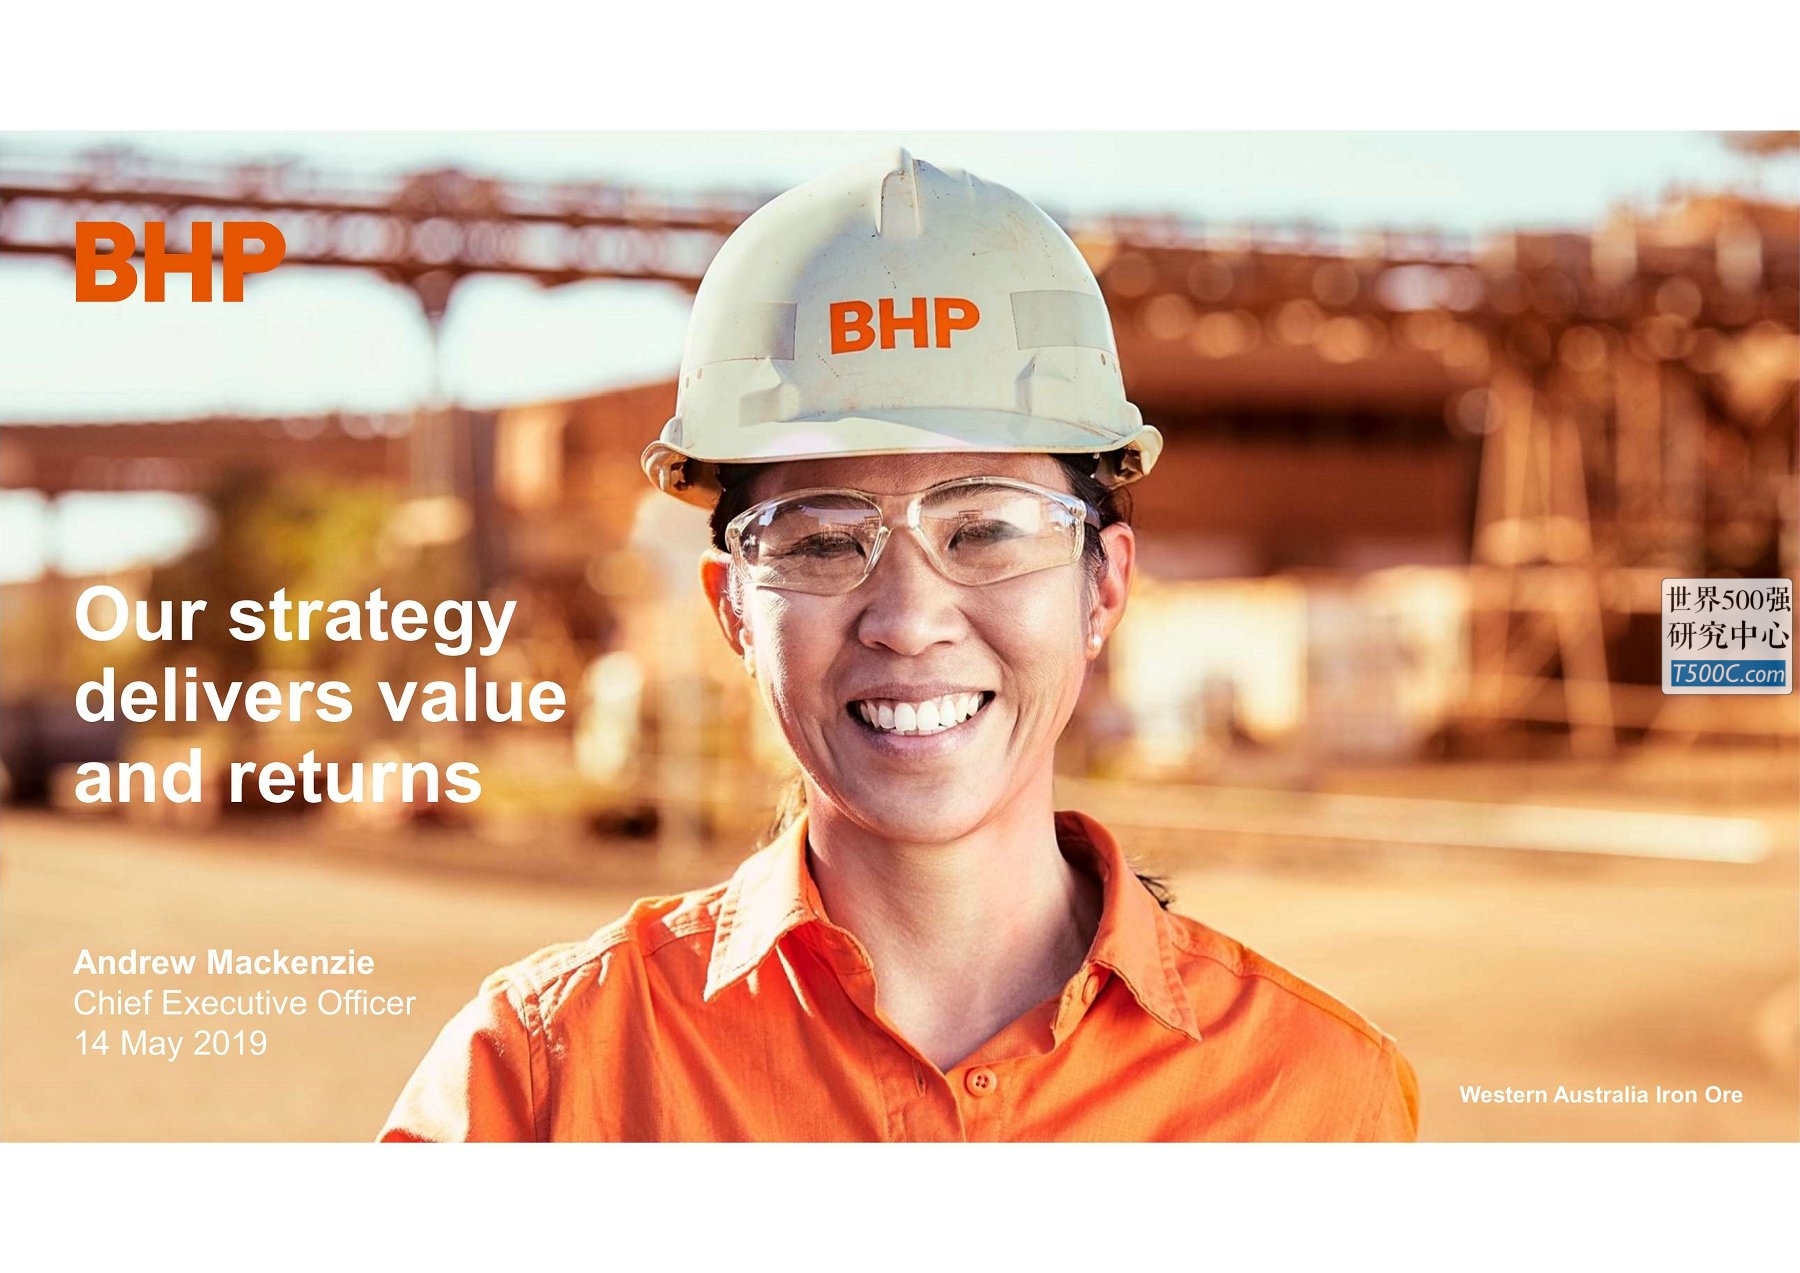 必和必拓BhpBilliton_PPT样式_2019_T500C.com_global metals mining and steel conference.pdf